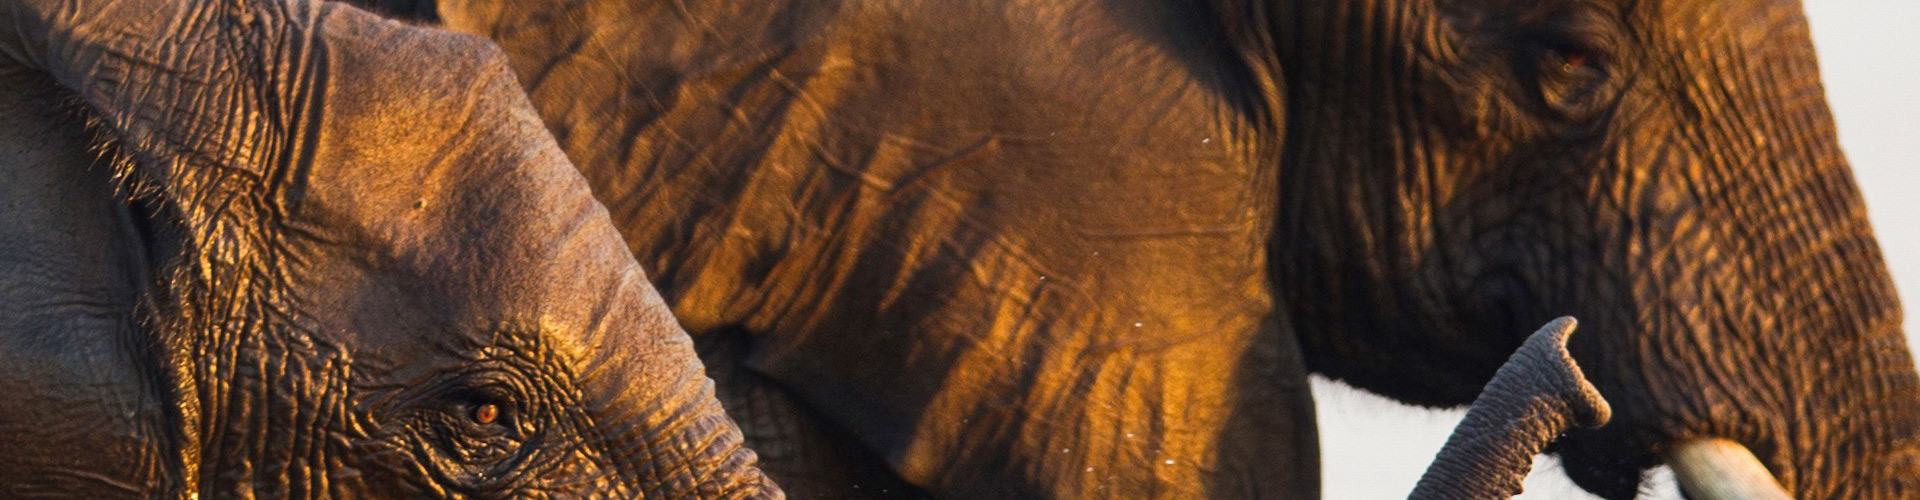 Elefanten im Lower Sambesi Nationalpark in Sambia